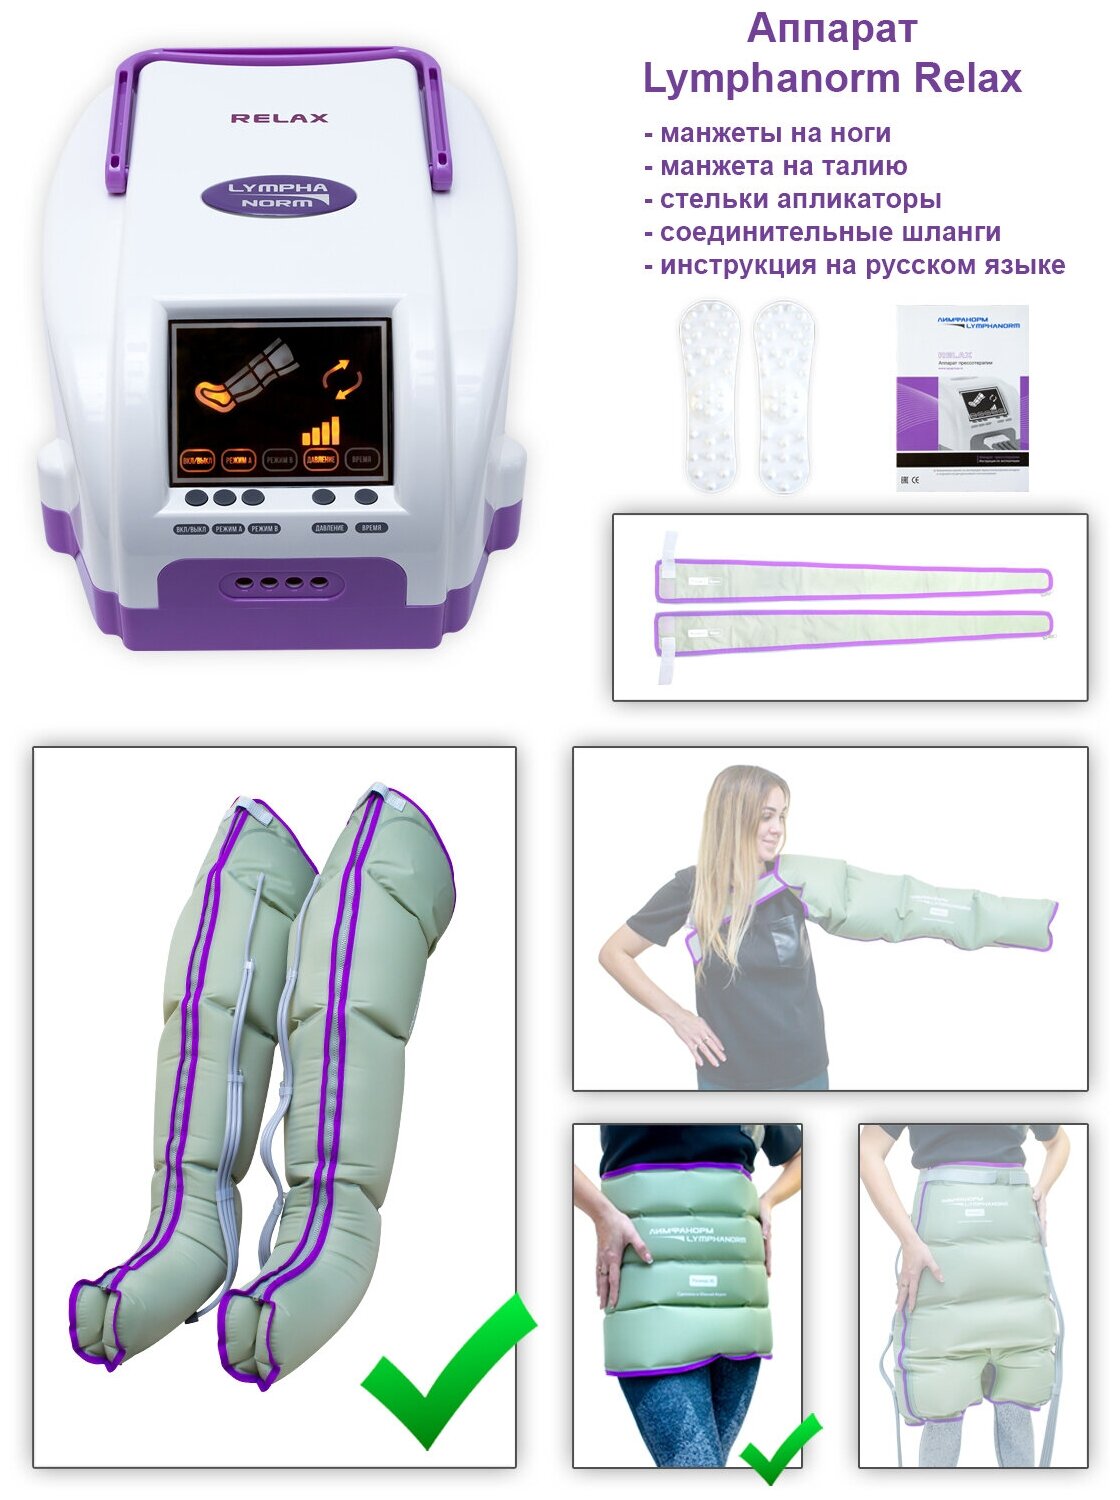 Аппарат для лимфодренажа и прессотерапии LymphaNorm (ЛимфаНорм) RELAX в комплекте с манжетами на ногу (размер XL) + манжета-пояс (размер XL)